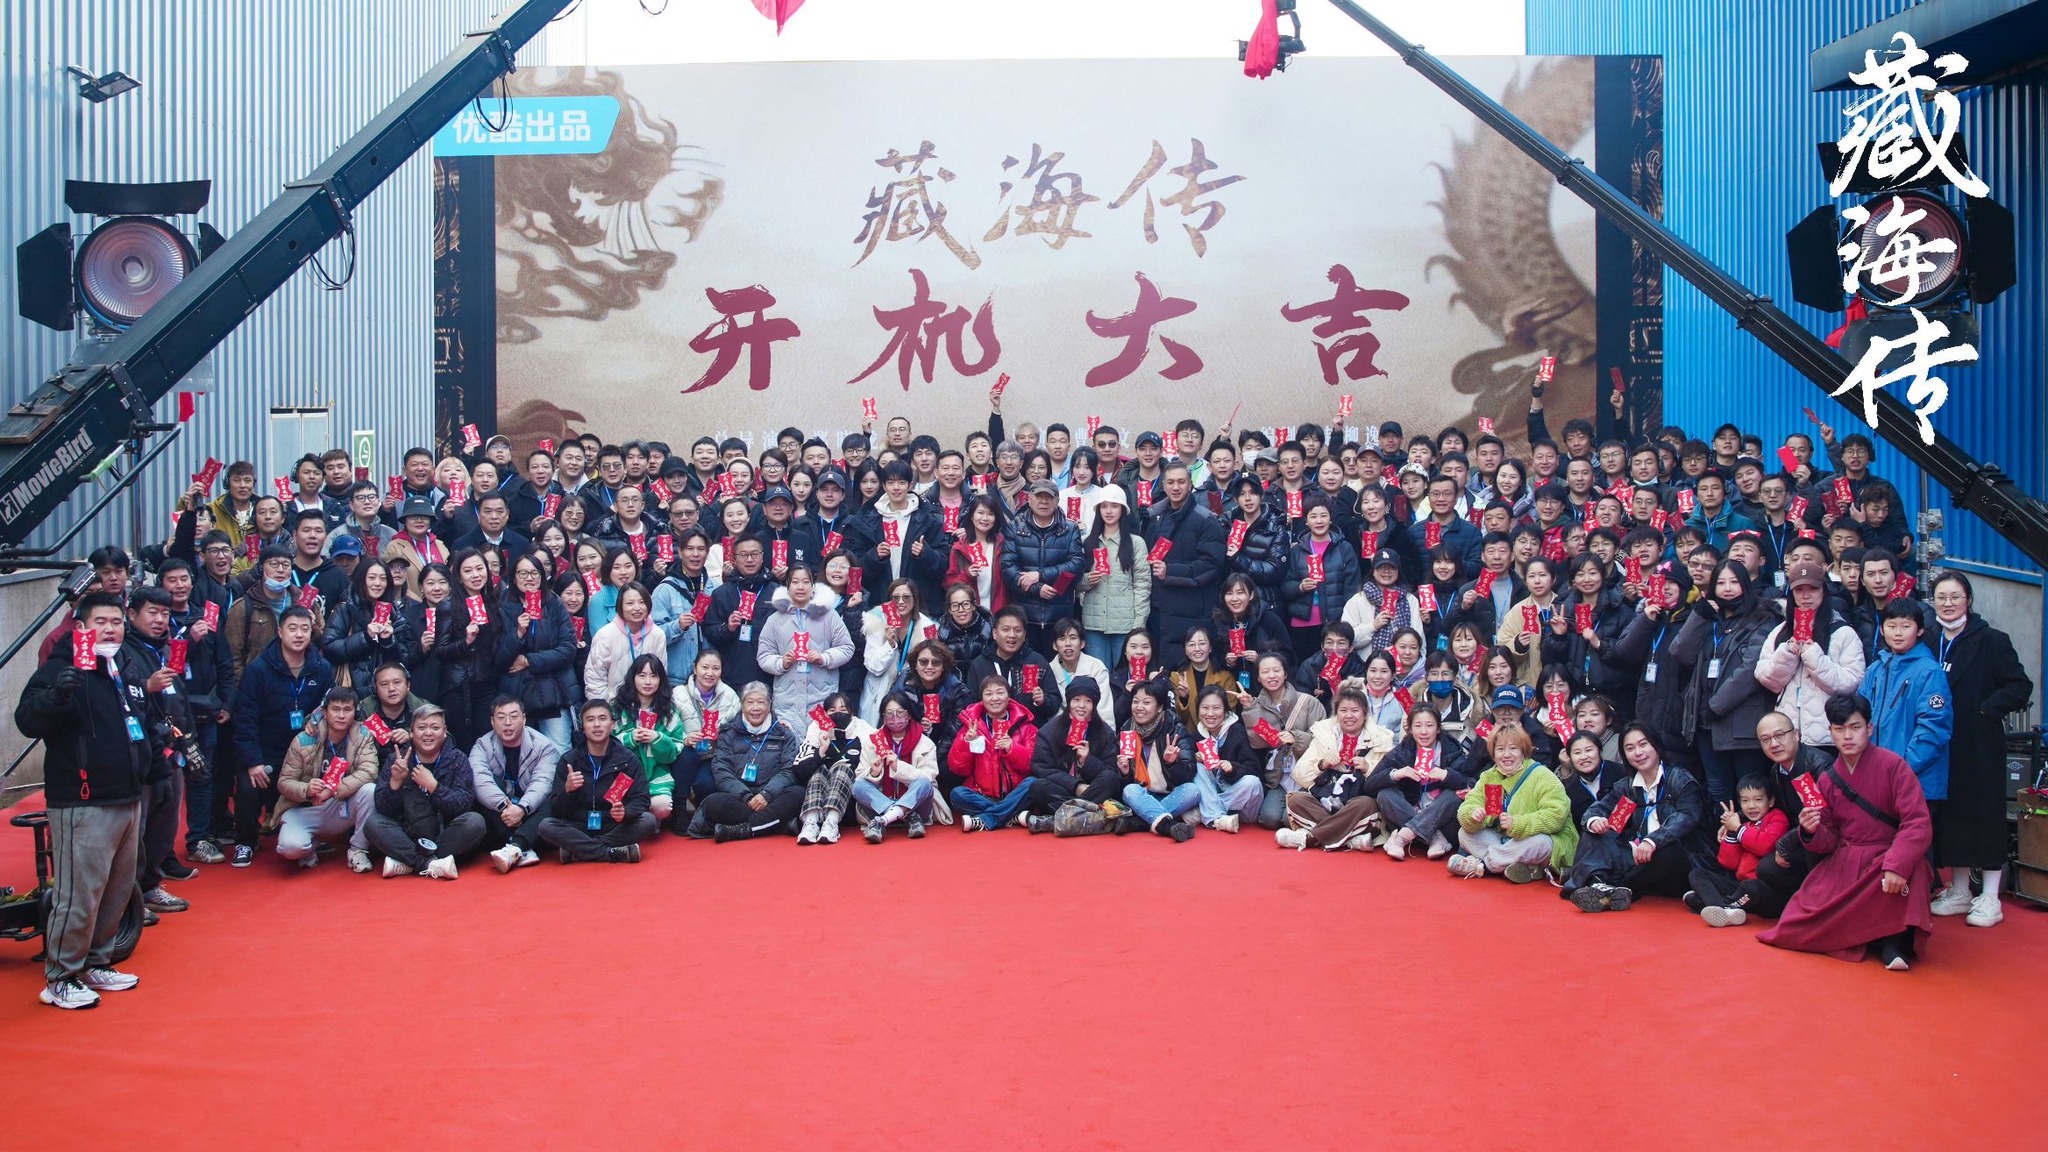 Đoàn làm phim Tạng Hải Truyện trong lễ khai máy vừa qua (Nguồn: internet)